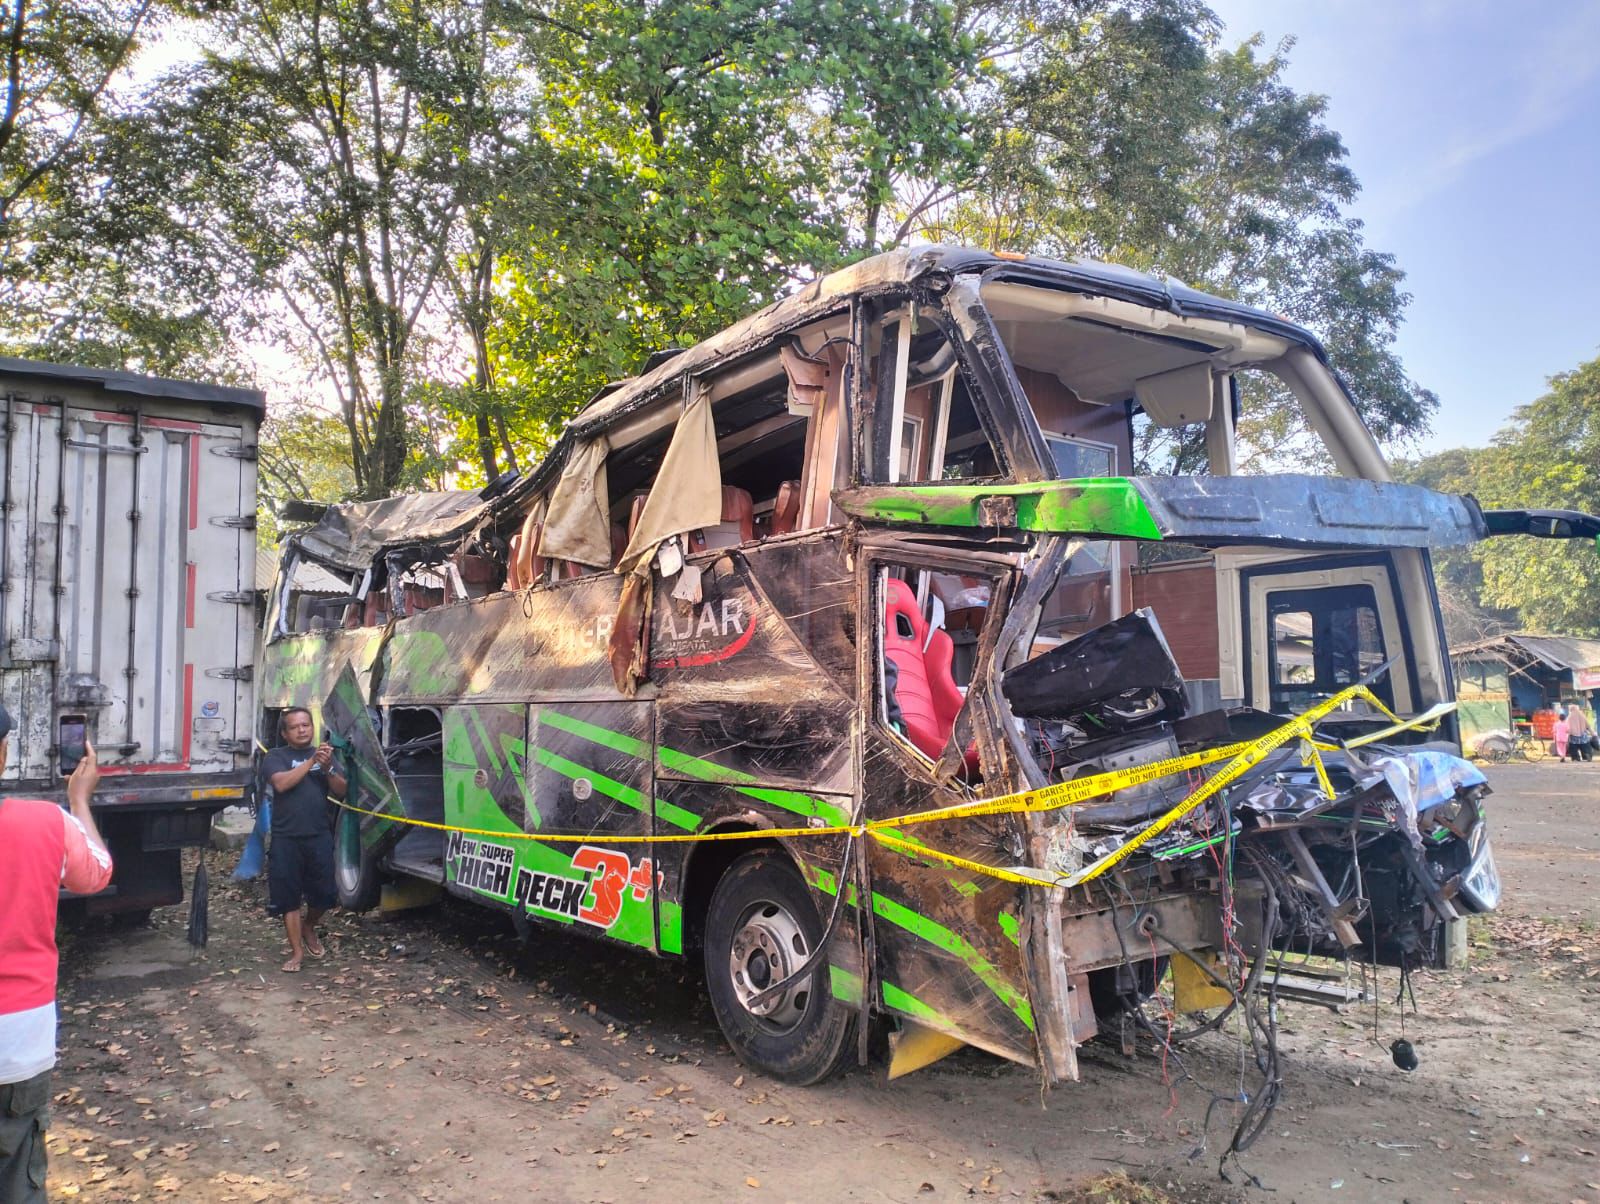 Bus Rombongan SMK Lingga Kencana Kecelakaan Maut, Dirjen Hubdar Ingatkan Pentingnya Uji Berkala